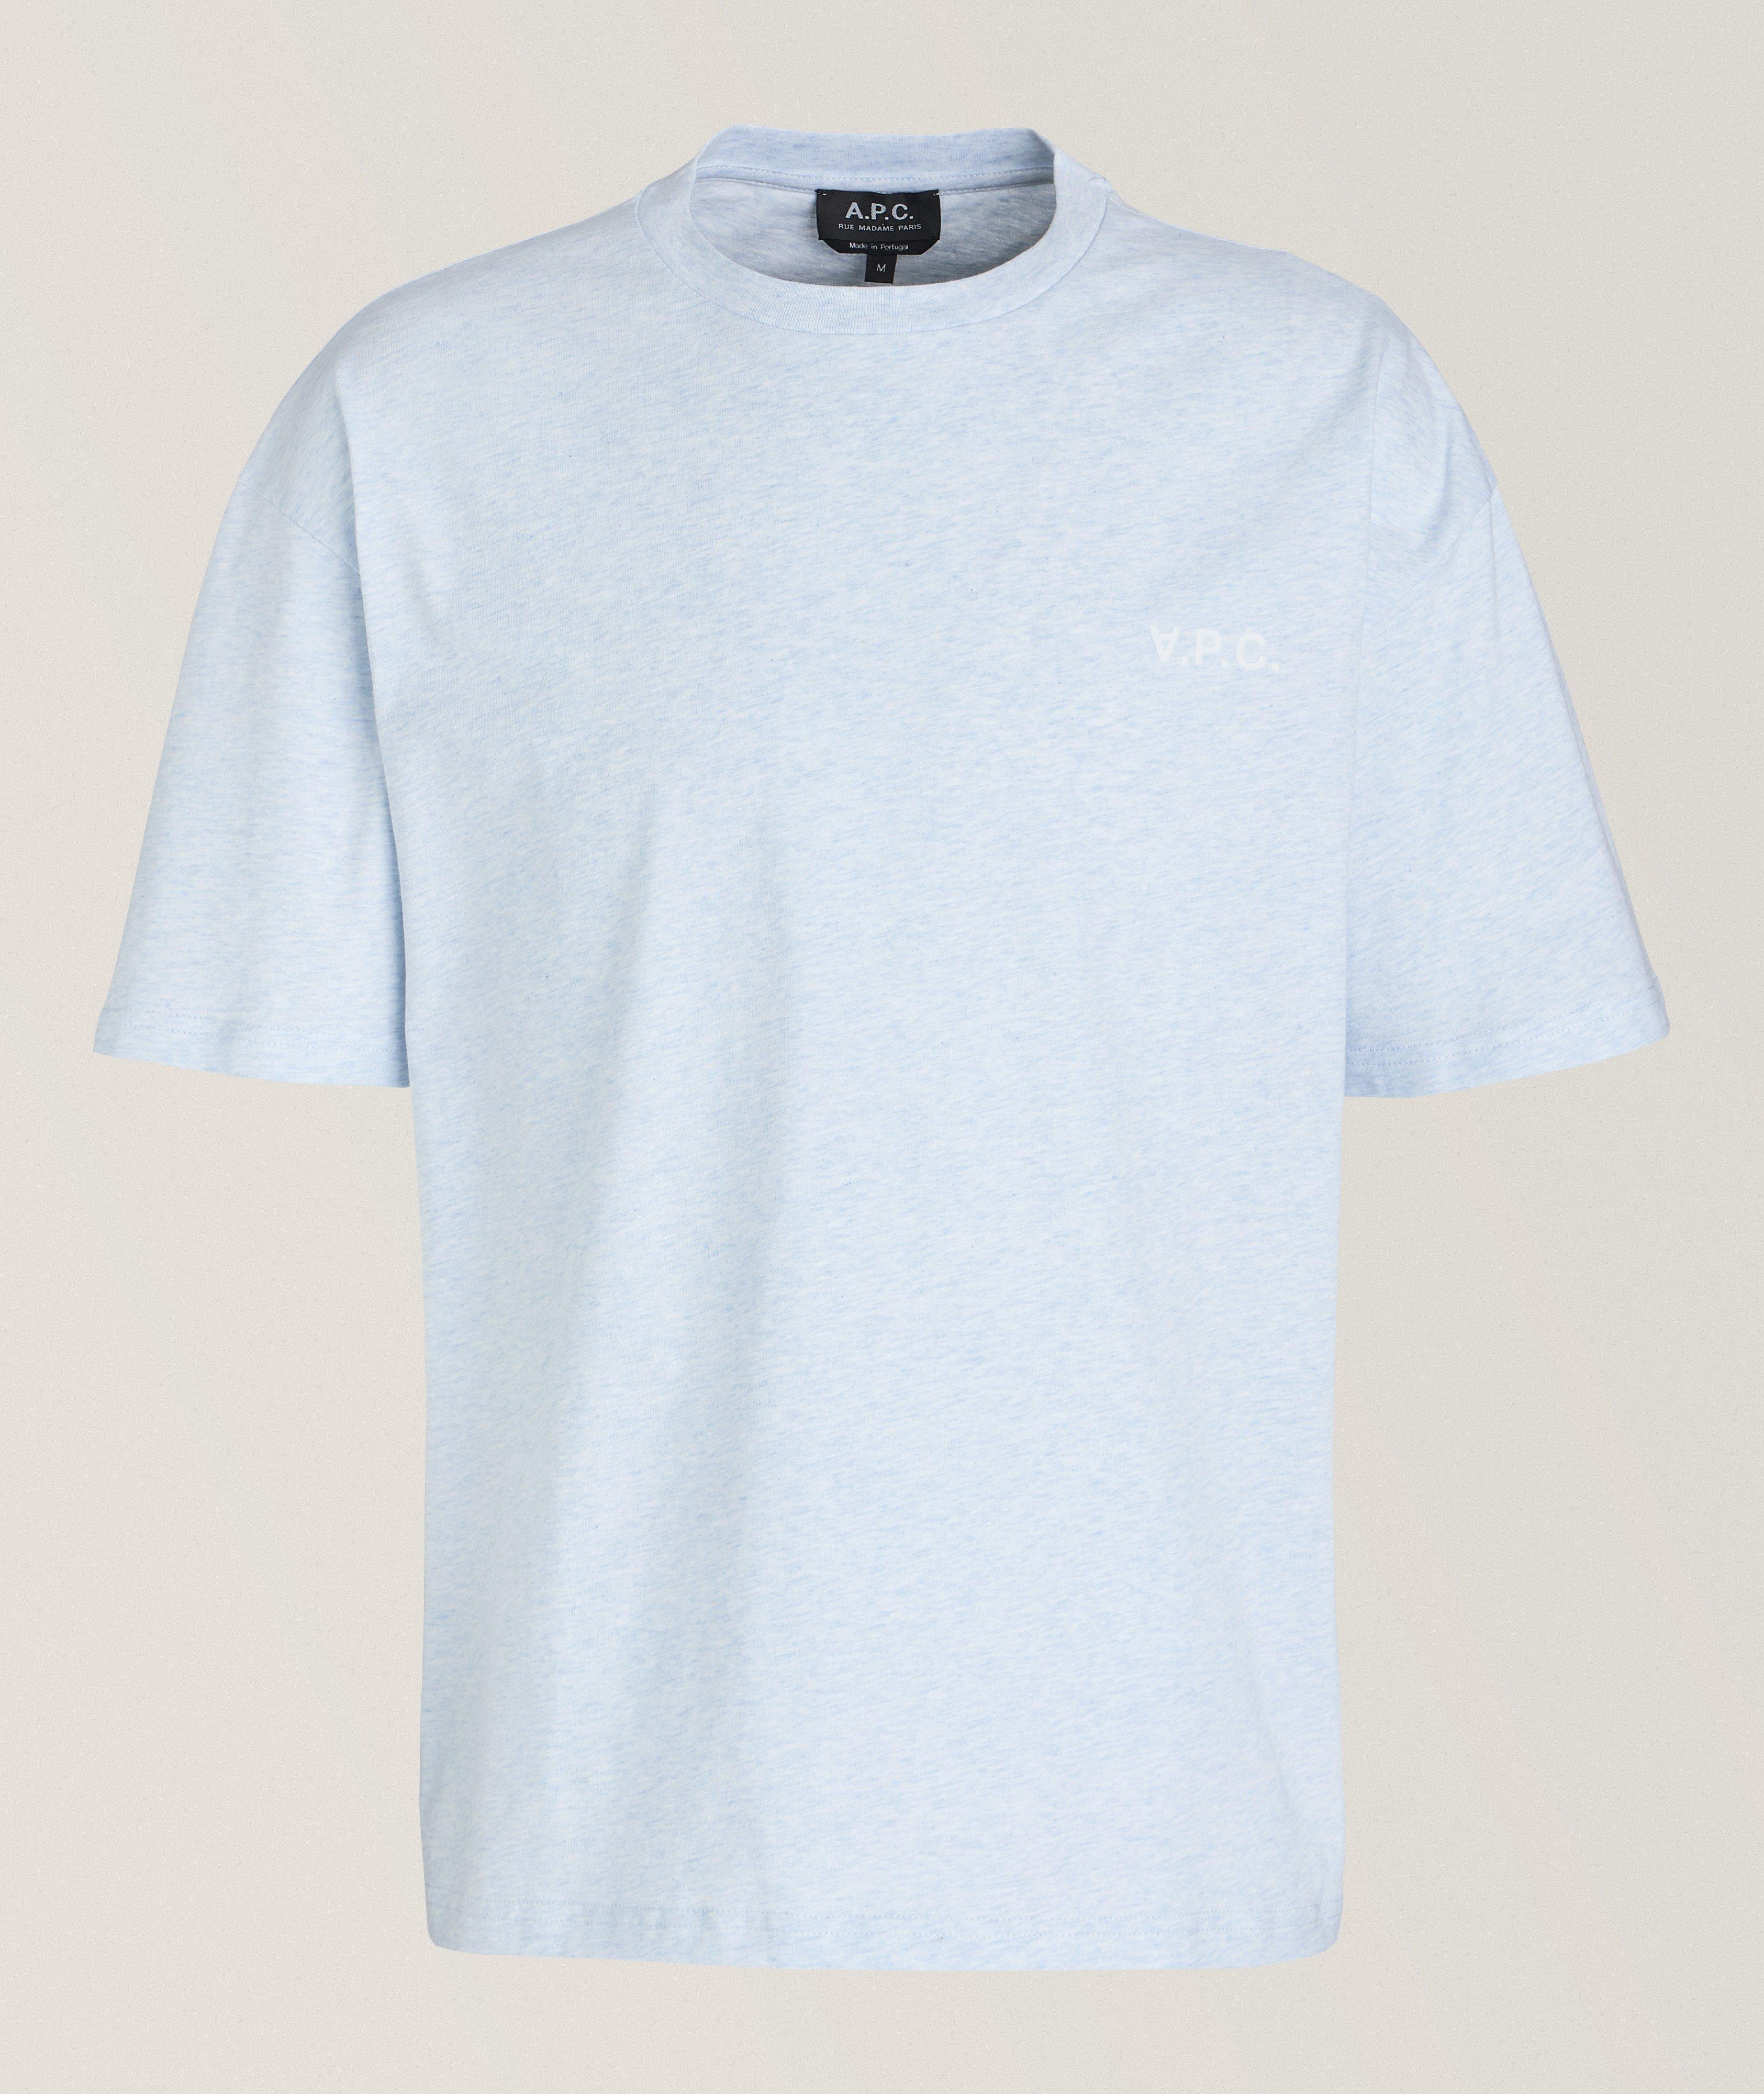 New Joachim Mélange Cotton T-Shirt